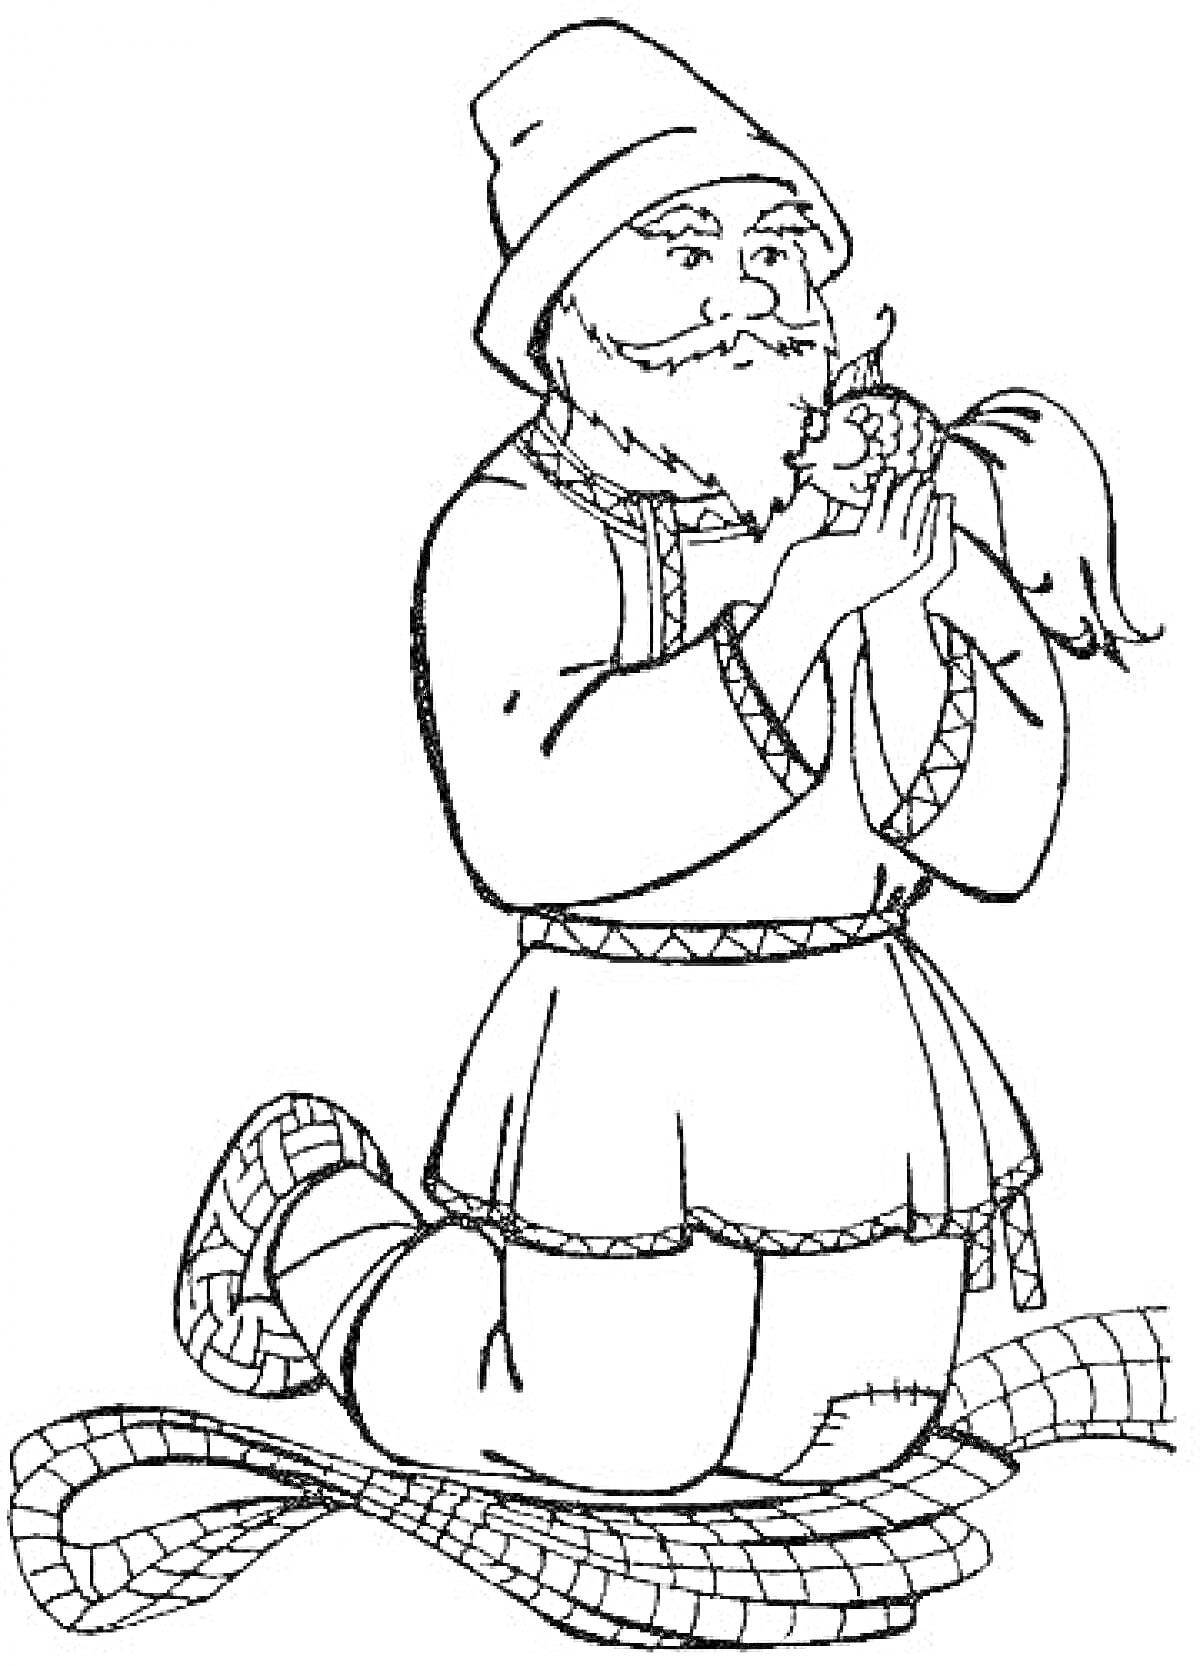 Раскраска Старик с золотой рыбкой в руках на коленях на рыбацкой сети